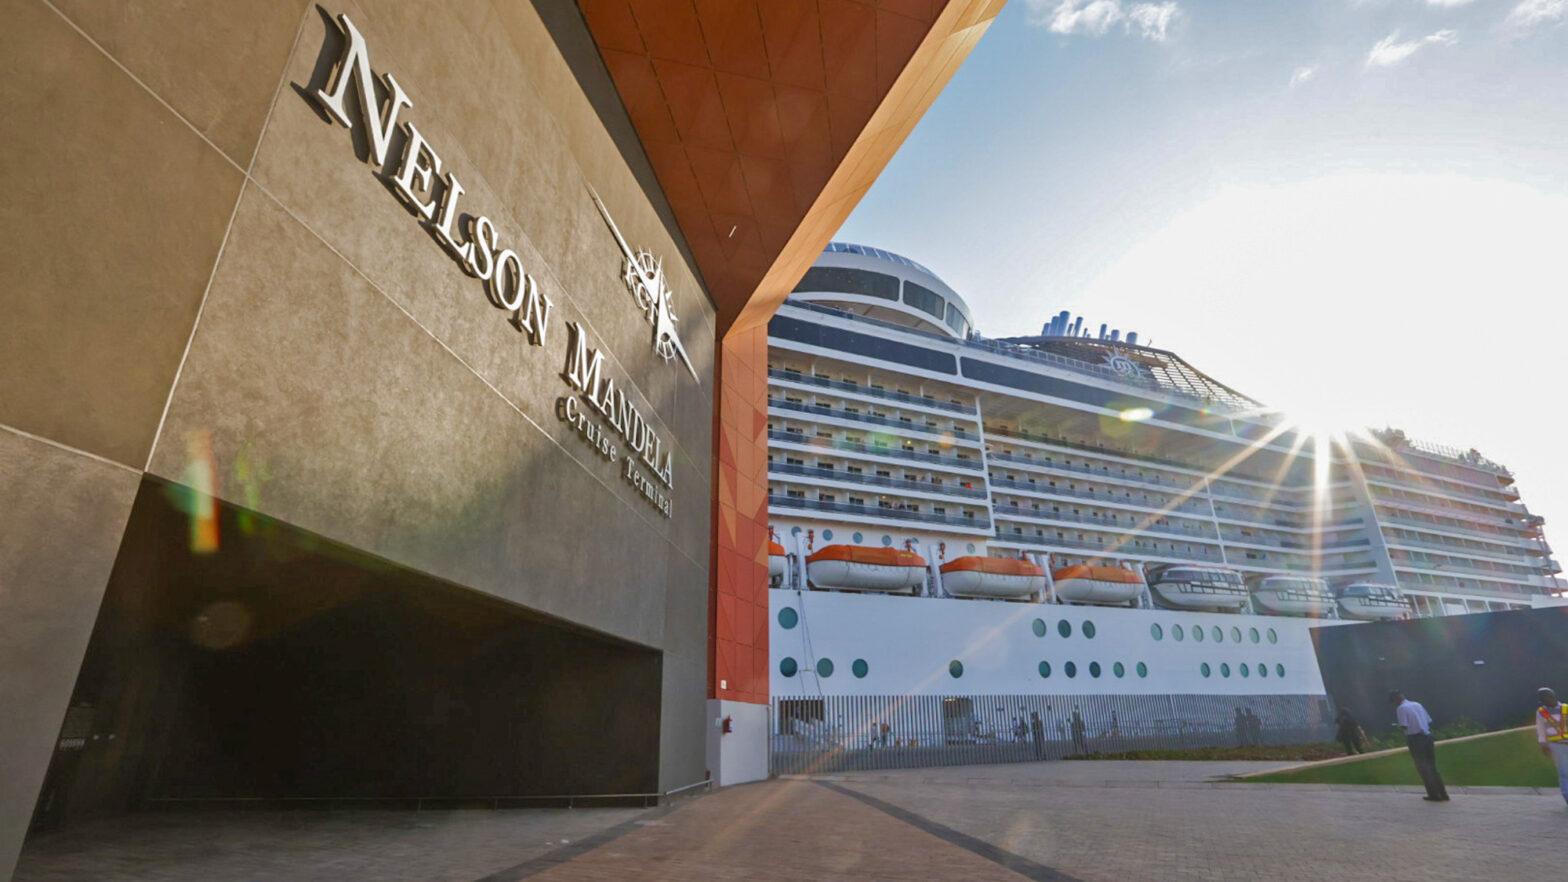 Nelson Mandela Cruise Terminal